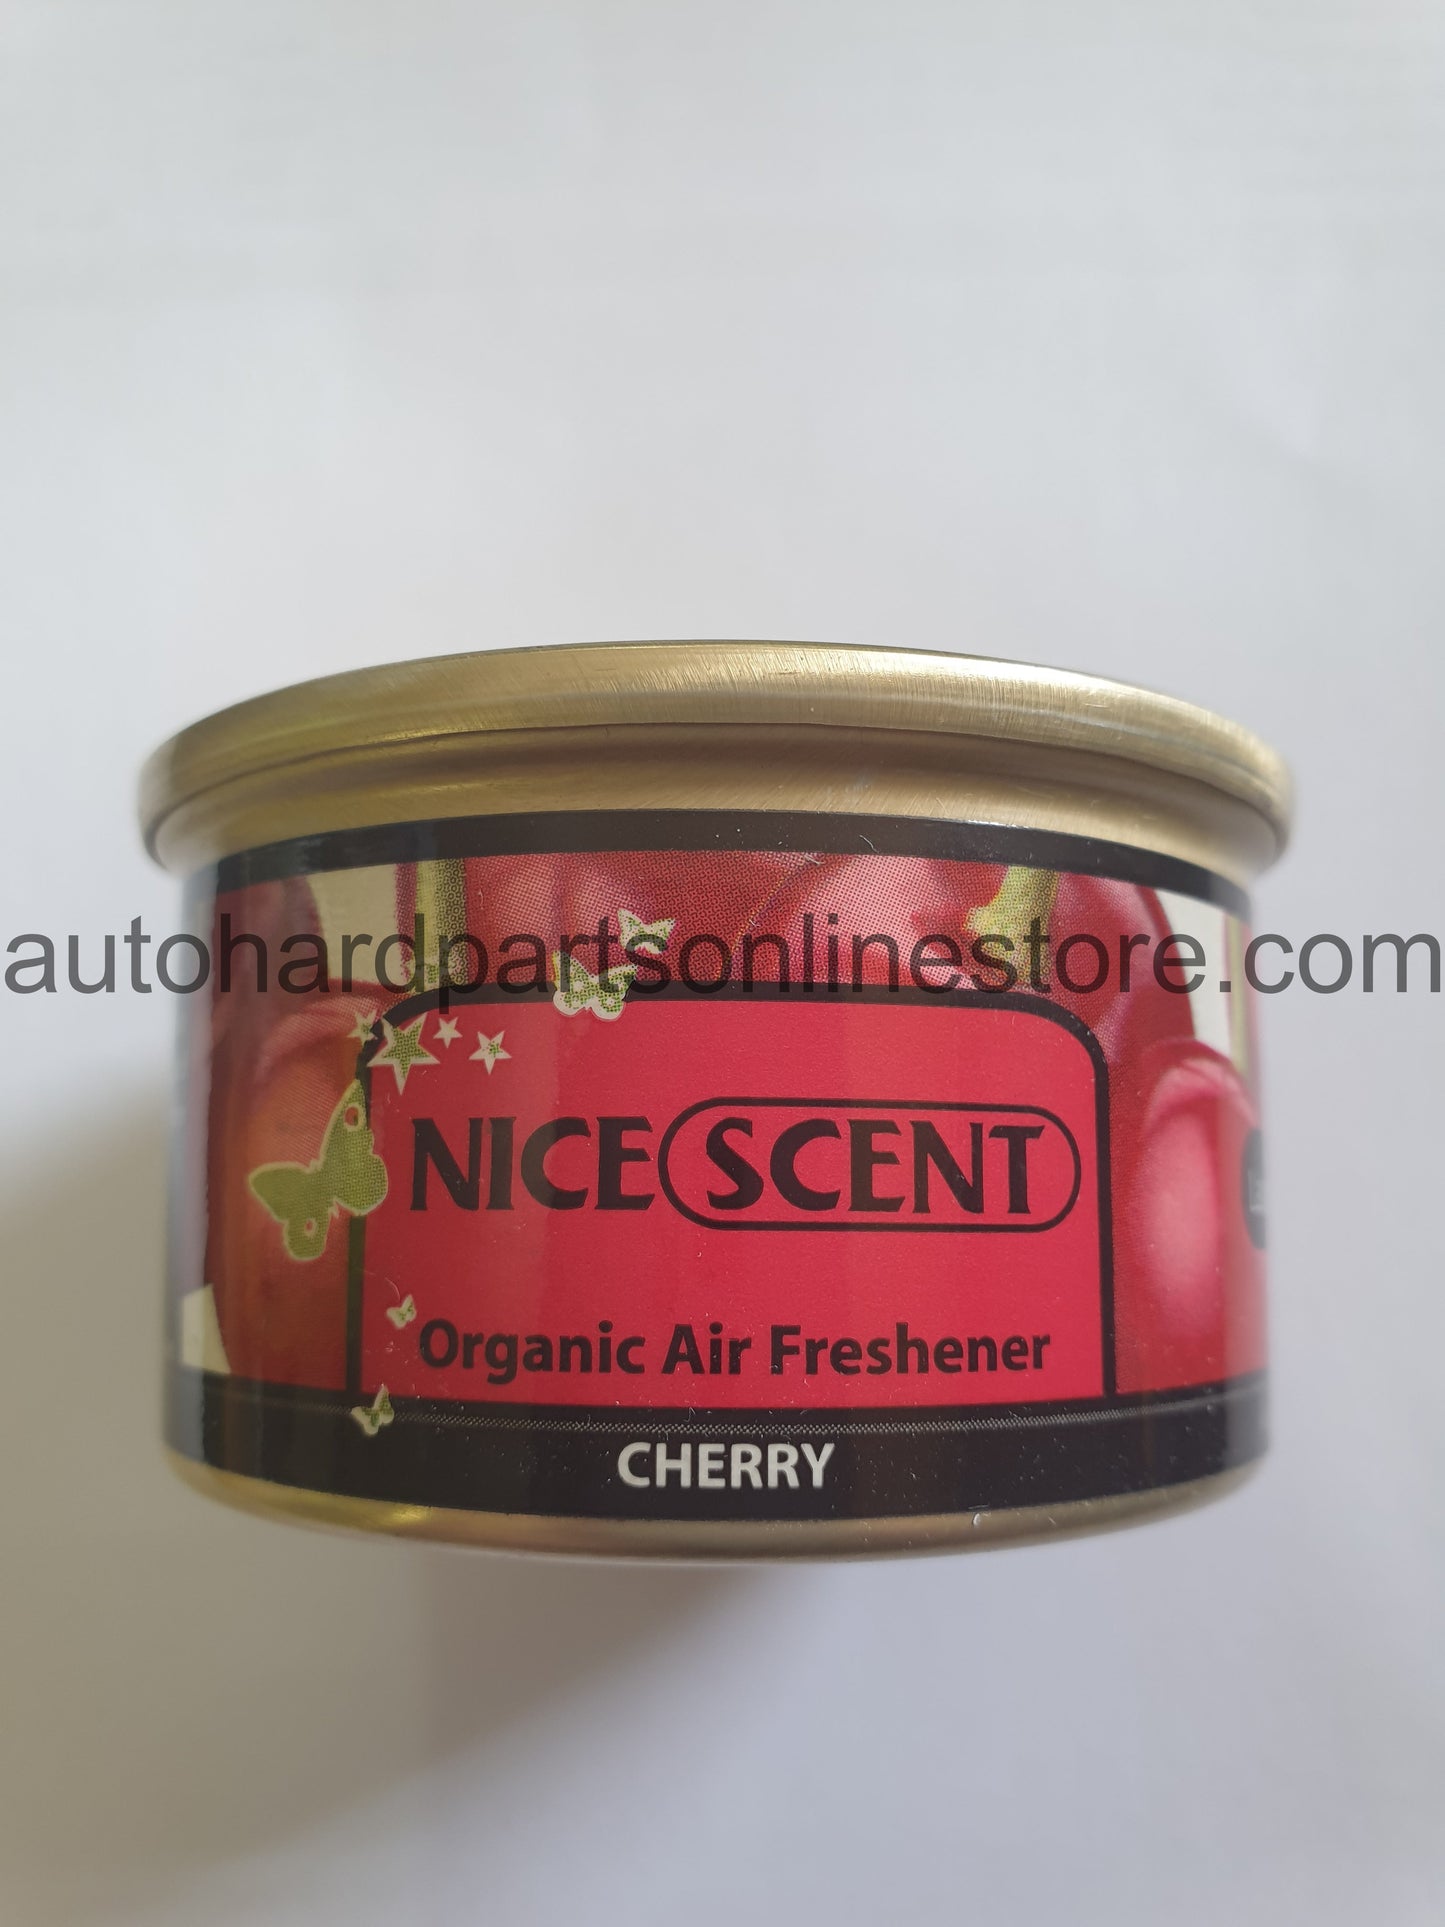 Nice Scent Organic Air Freshener CHERRY